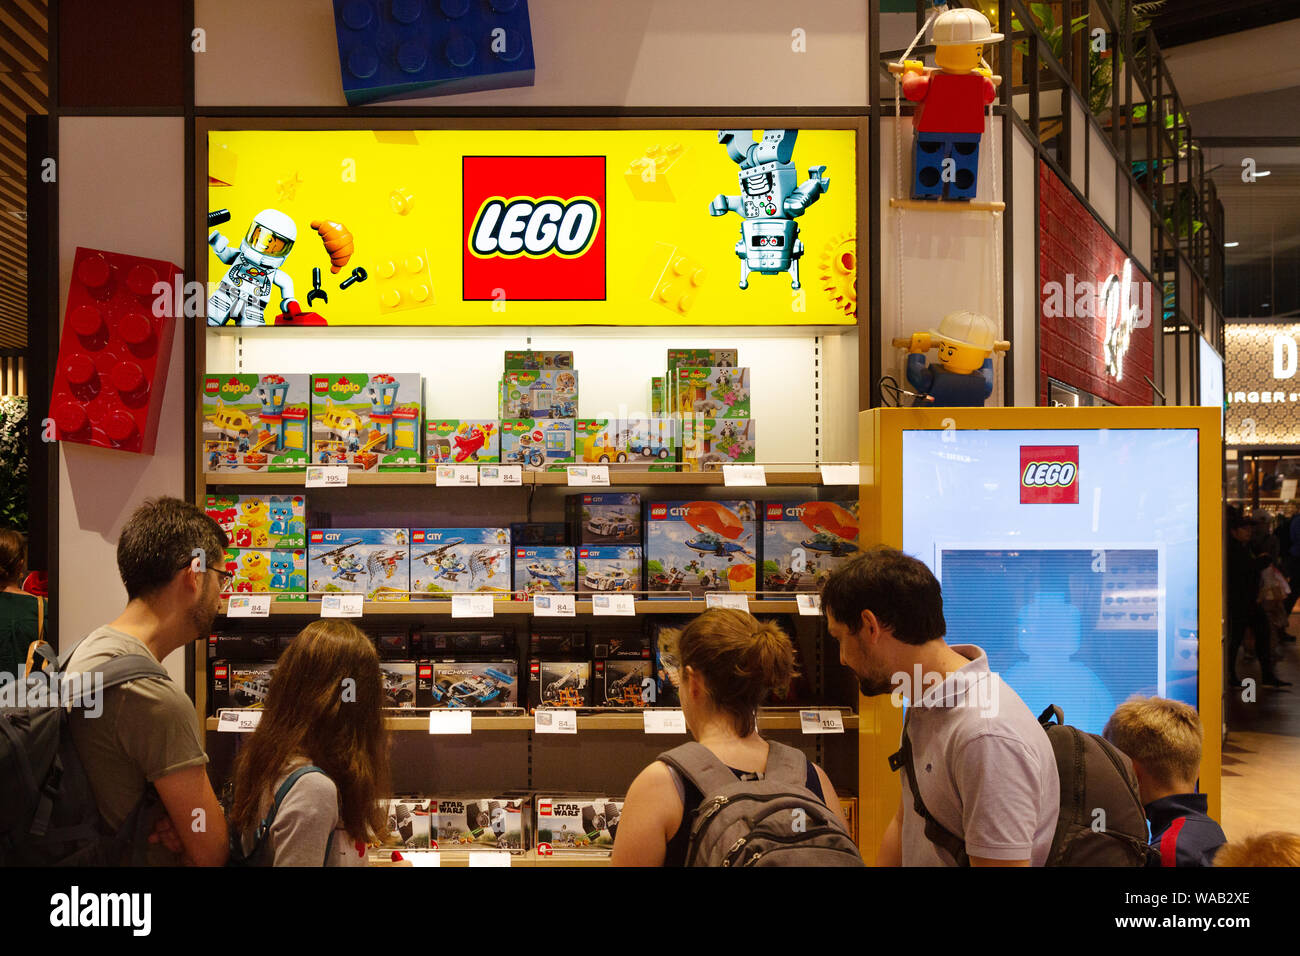 Lego Danimarca - persone che acquistano lego presso un negozio lego, l'aeroporto di Copenaghen, Copenaghen, Danimarca Scandinavia Foto Stock